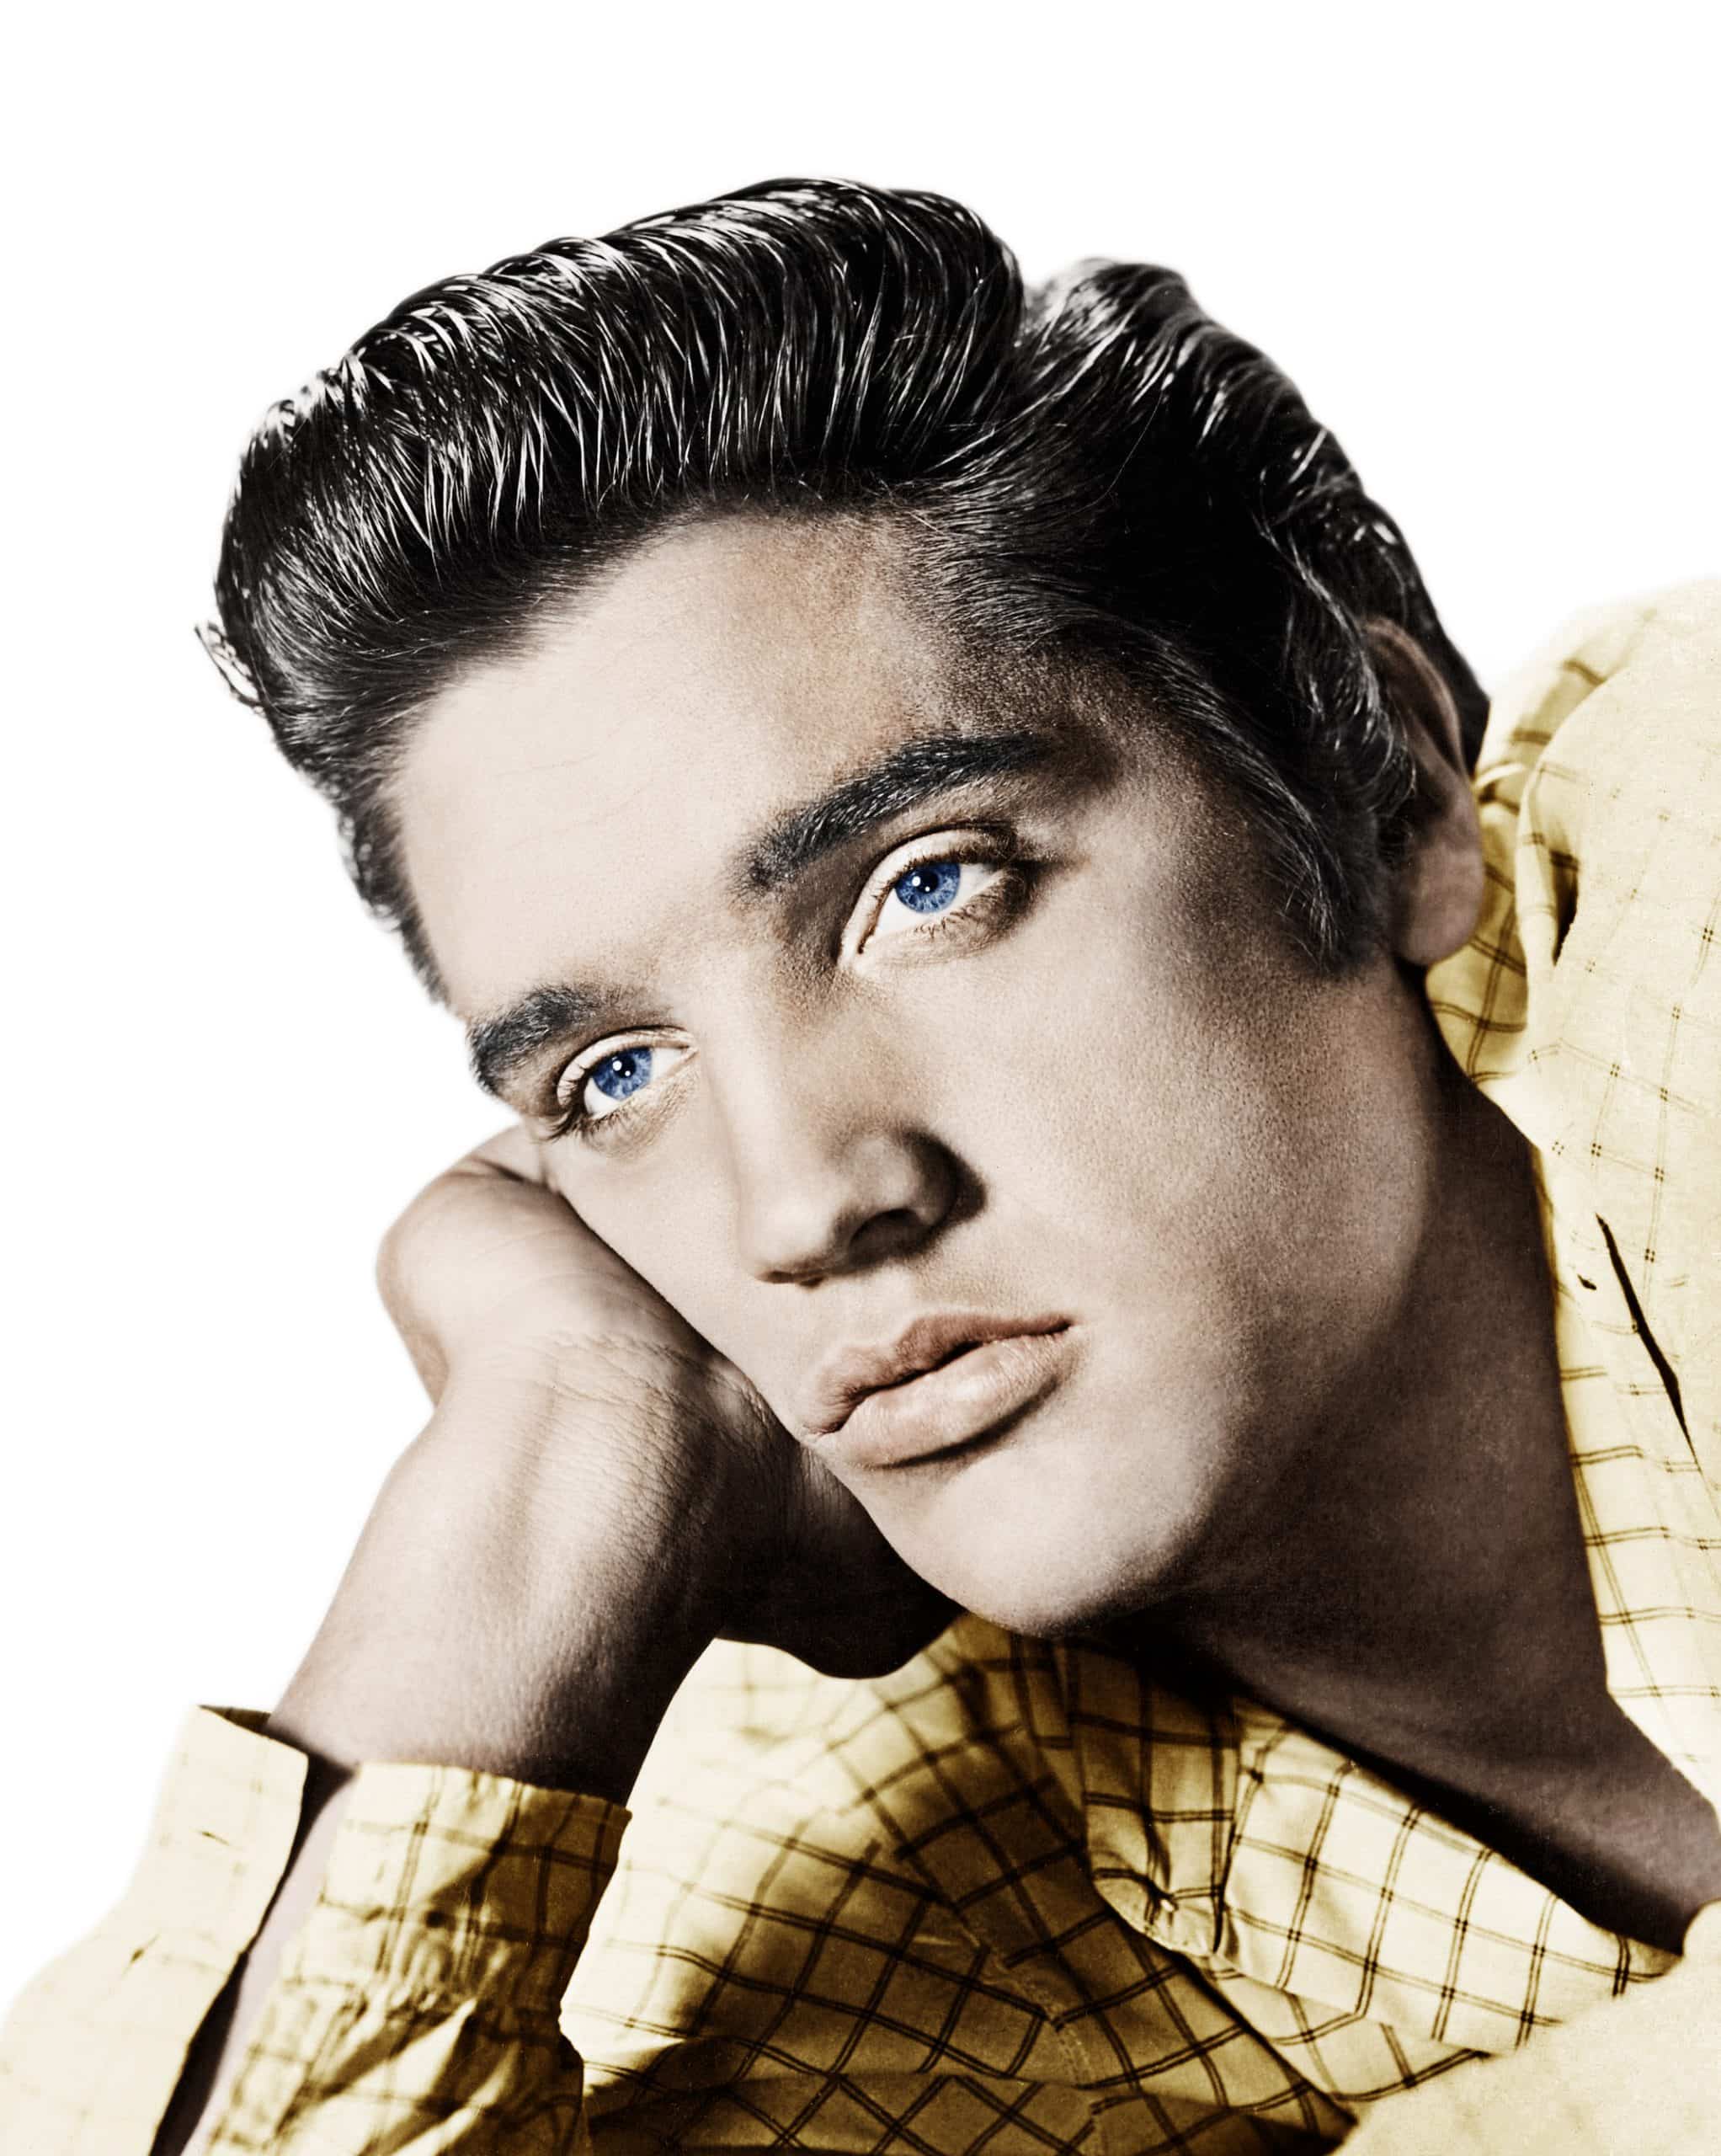 LOVE ME TENDER, Elvis Presley, 1956